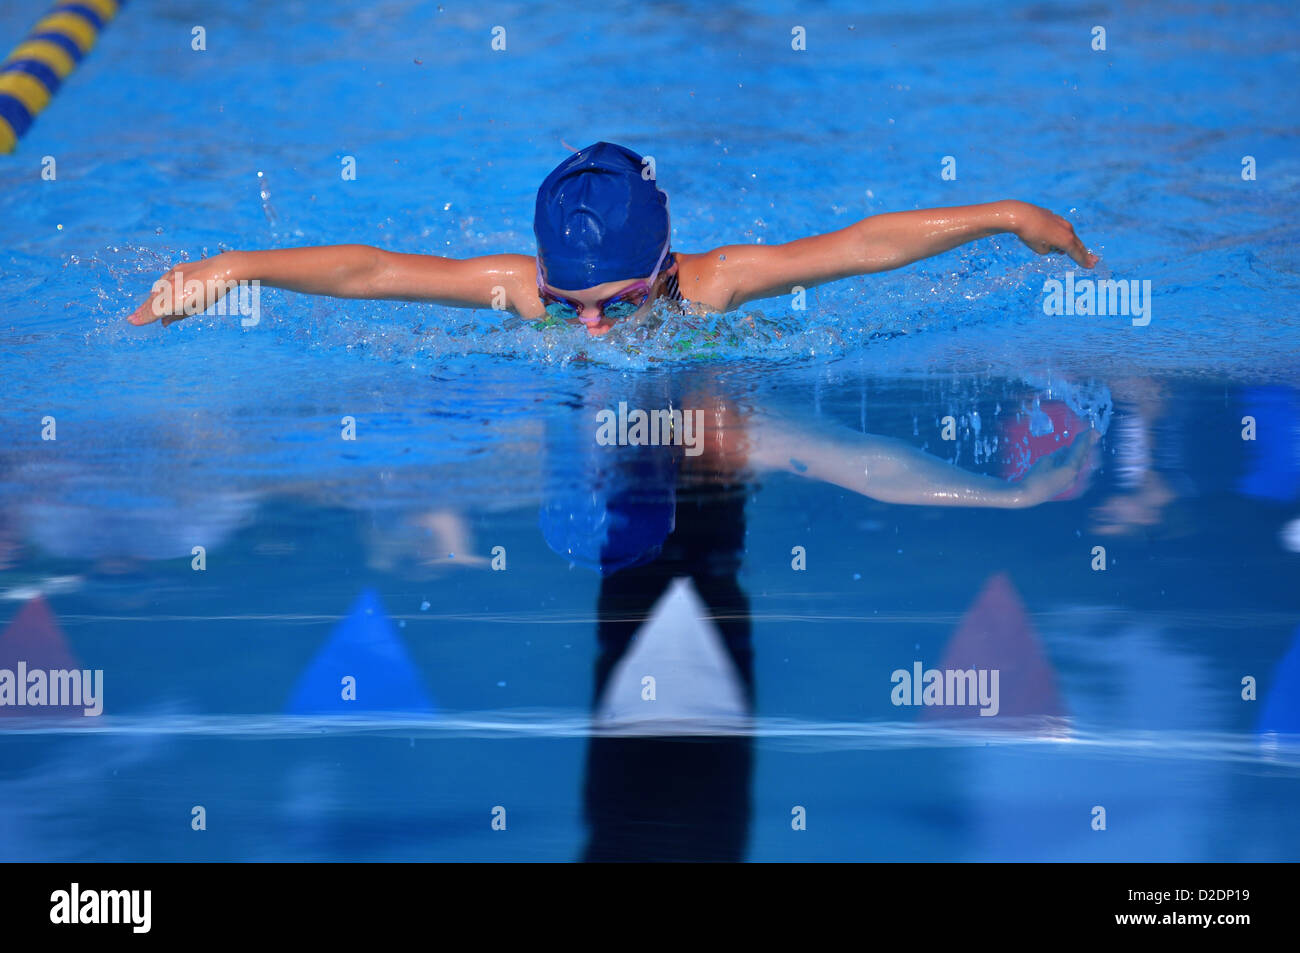 Jeune nageuse natation le papillon dans l'eau bleue qui se reflète sur l'eau. Banque D'Images